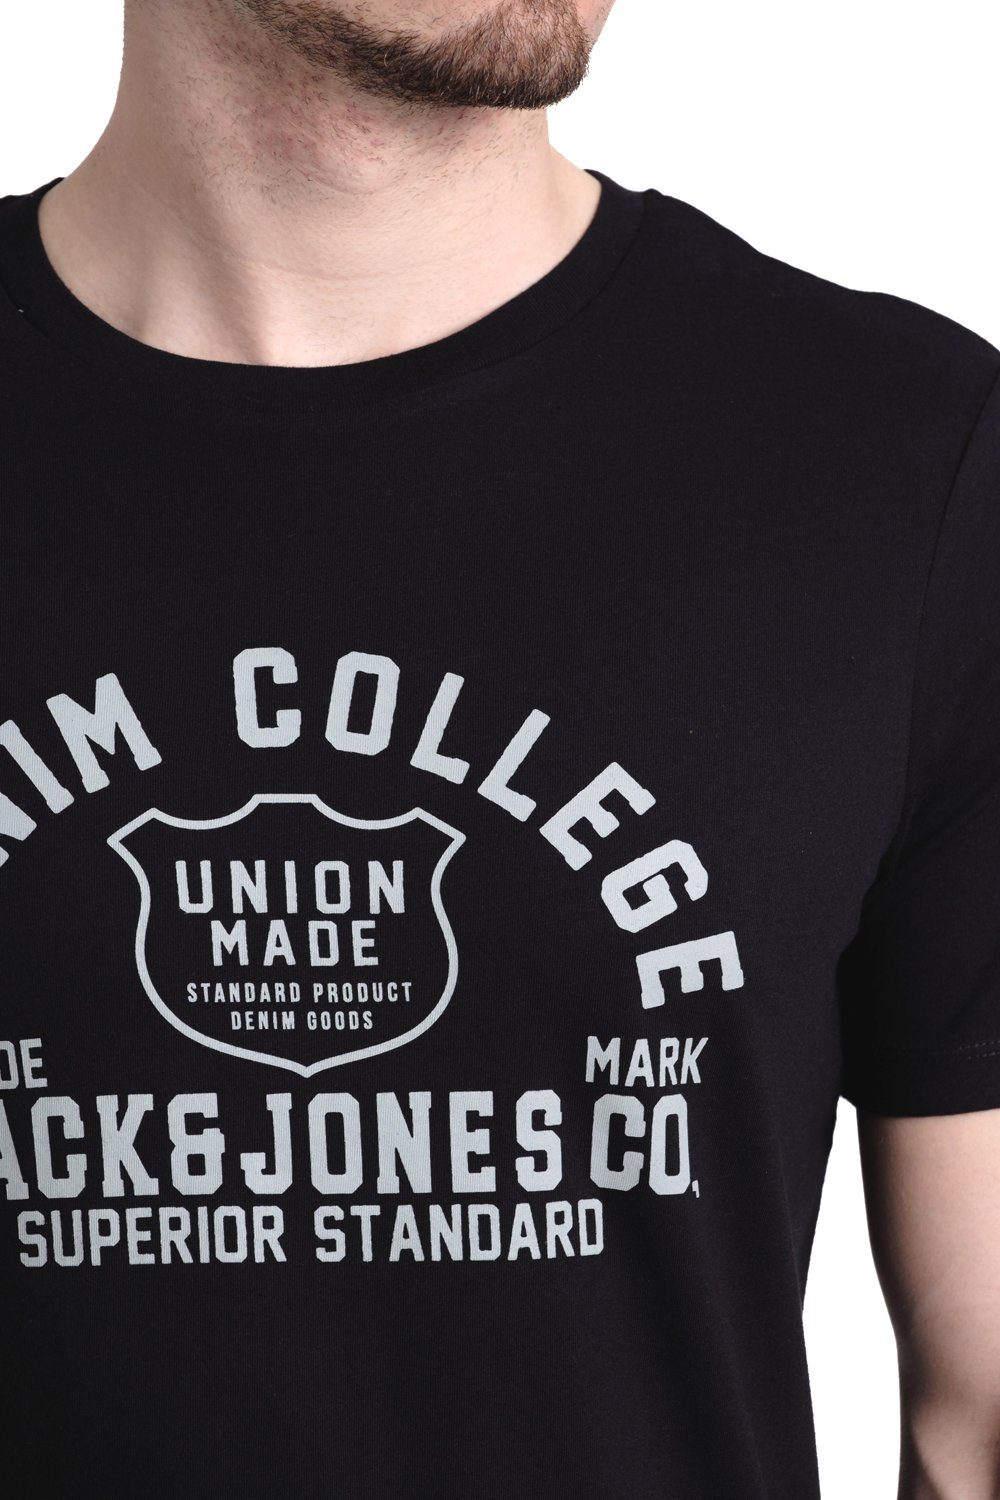 Aufdruck 4 aus Print-Shirt & Baumwolle Jones Jack OPT mit T-Shirt